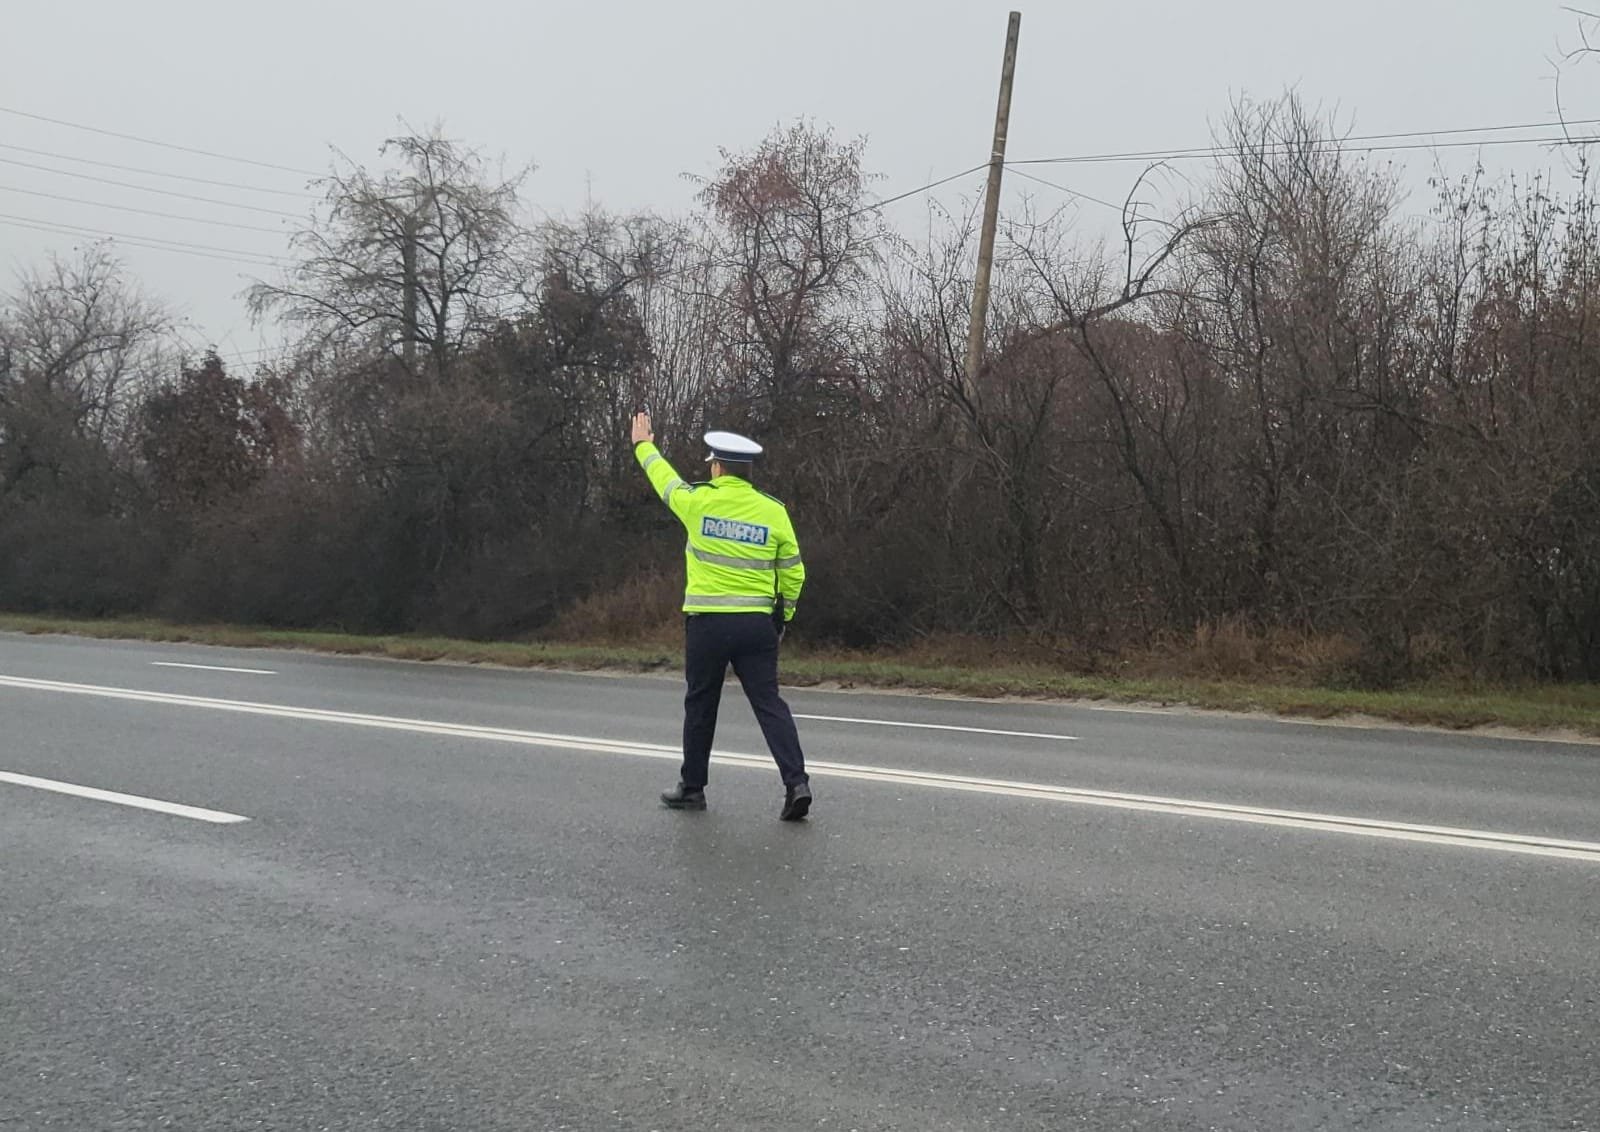 Conducător auto prins băut la volan în Constanța / În cauză s-a întocmit dosar de cercetare penală.